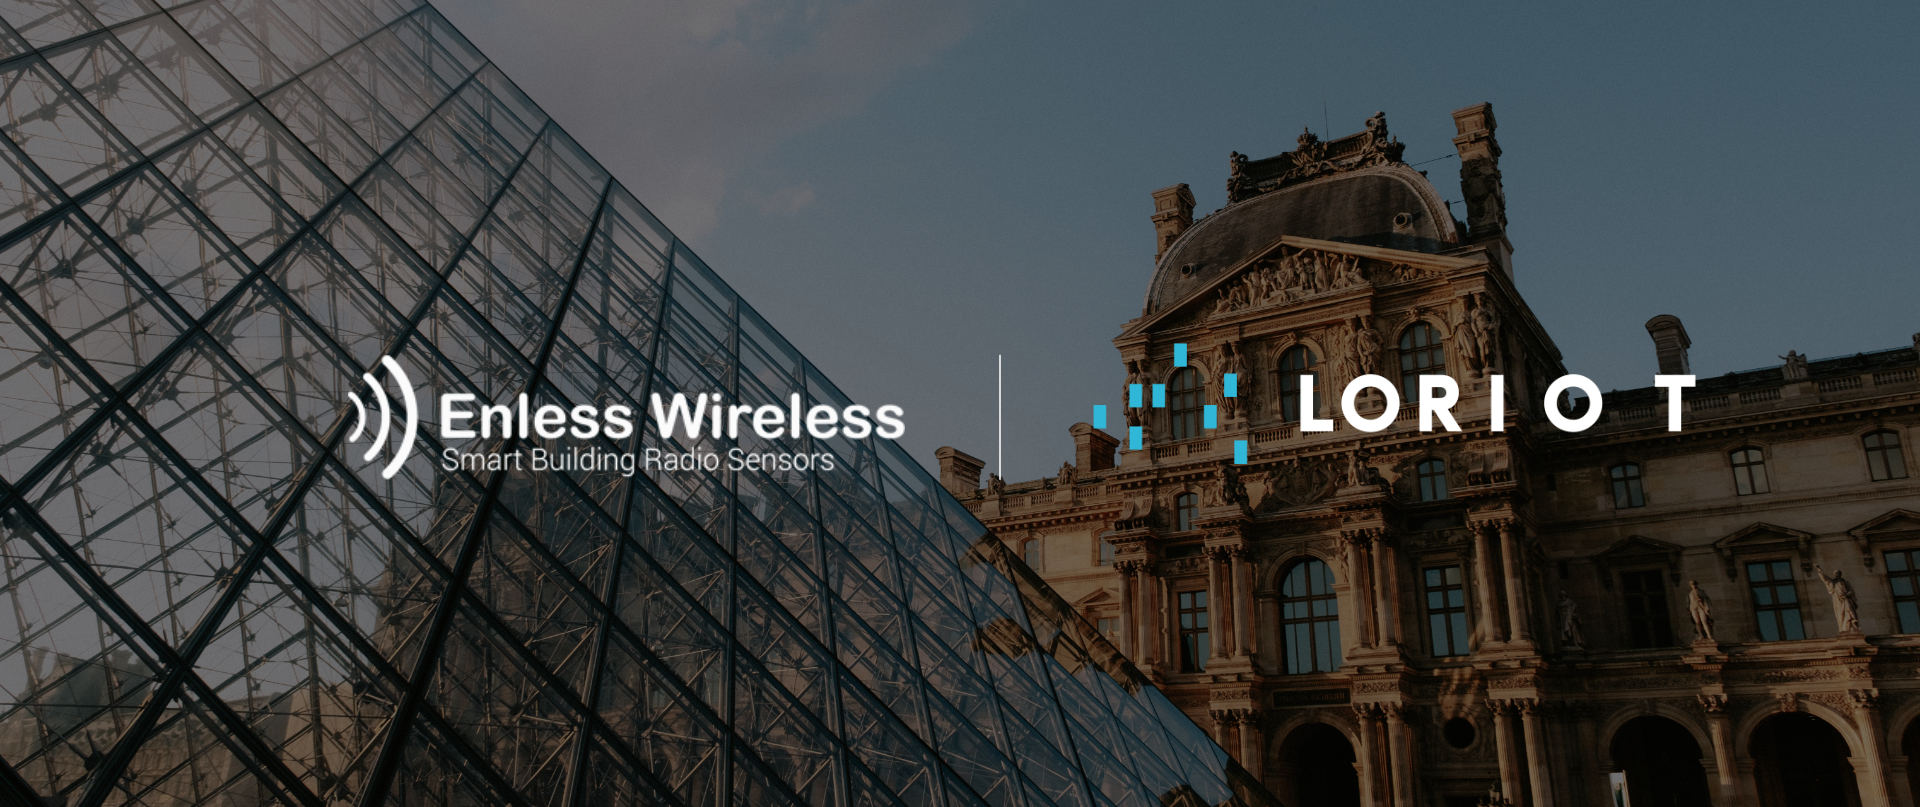 Enless Wireless + LORIOT